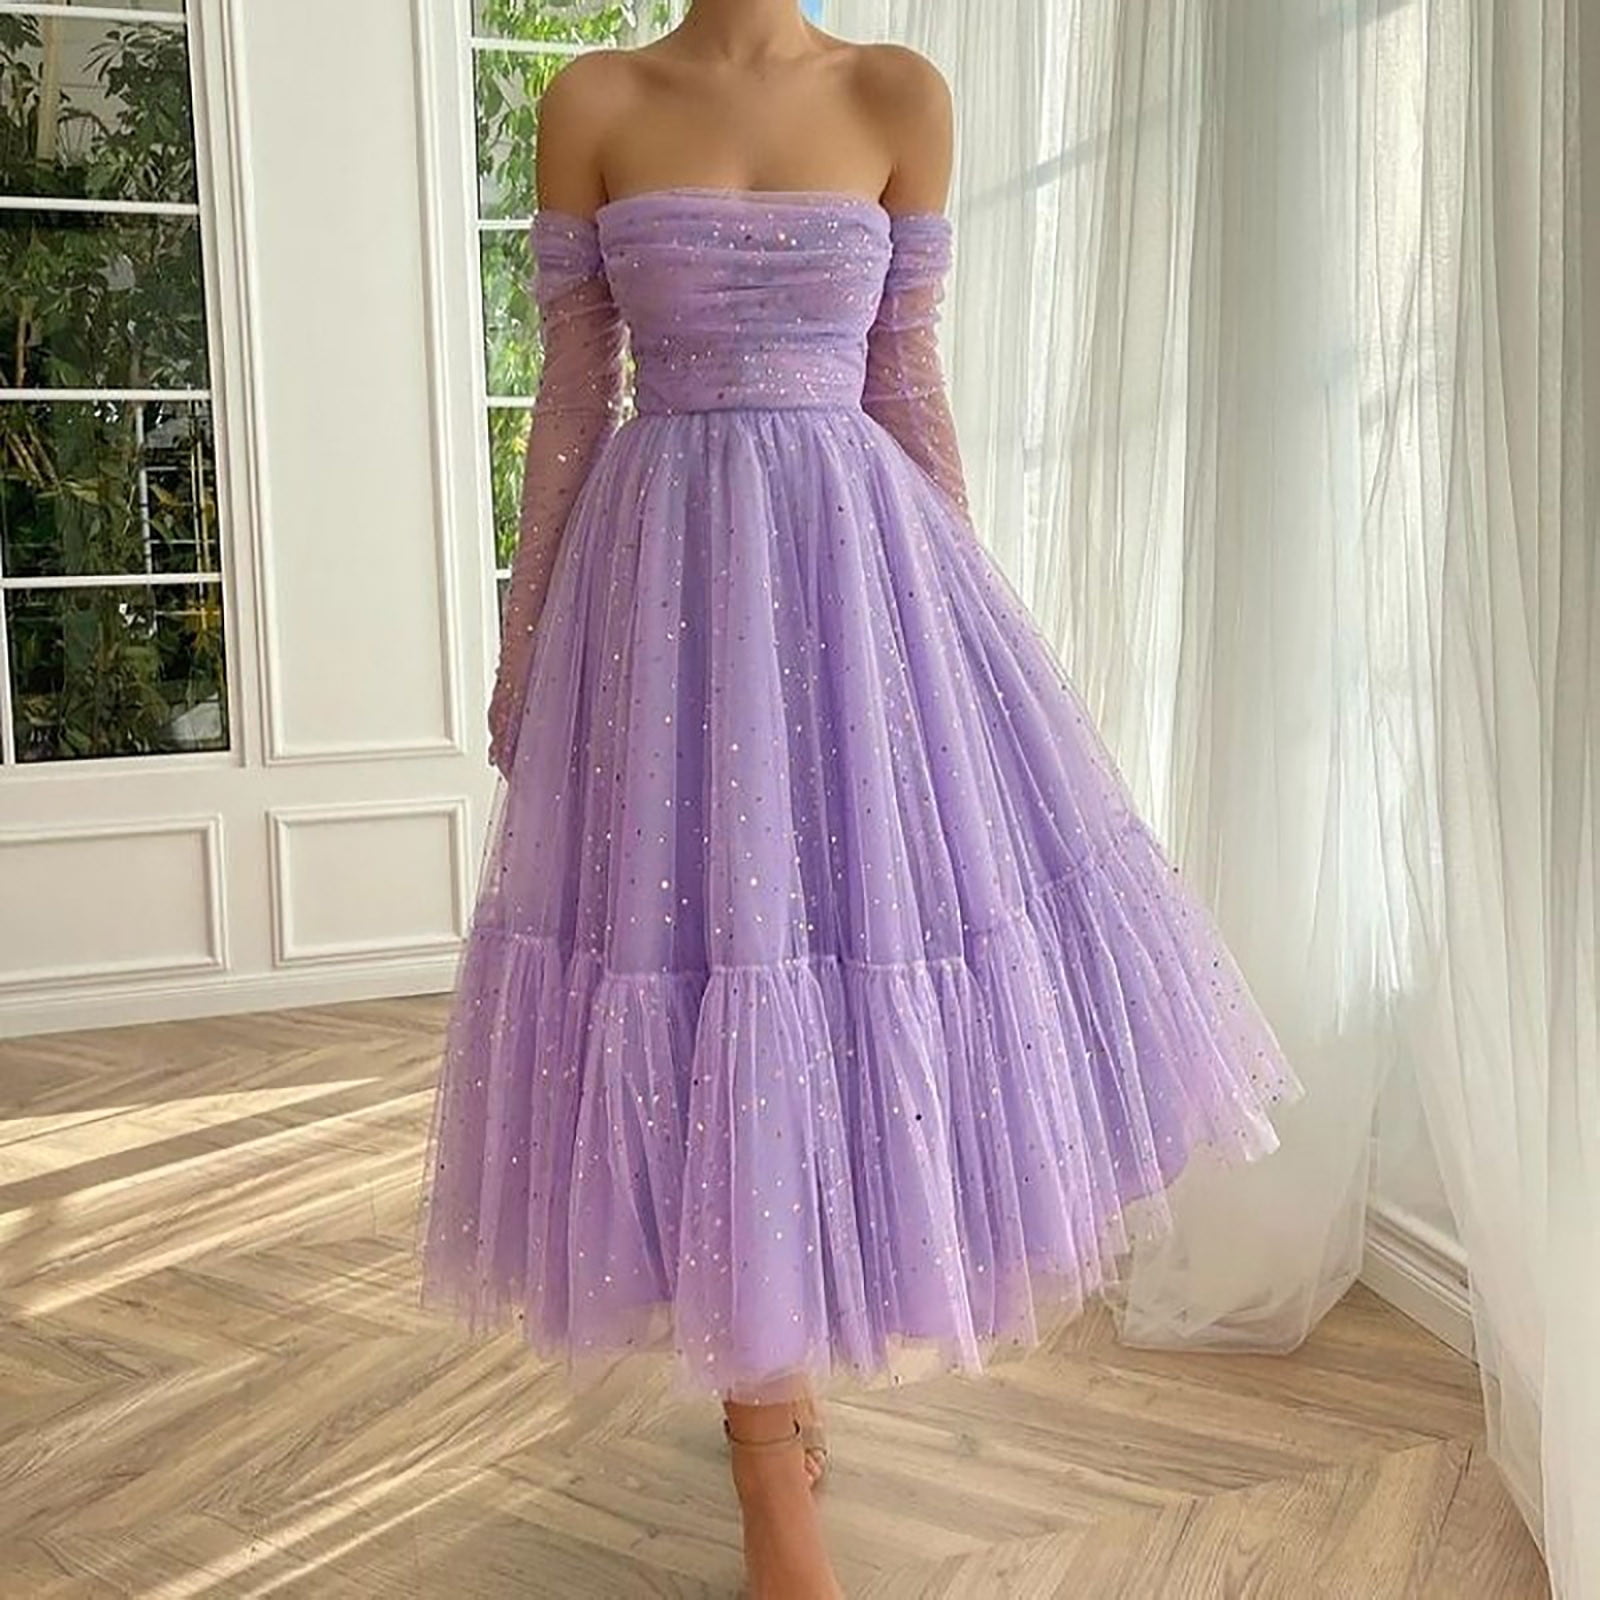 women’s purple dress